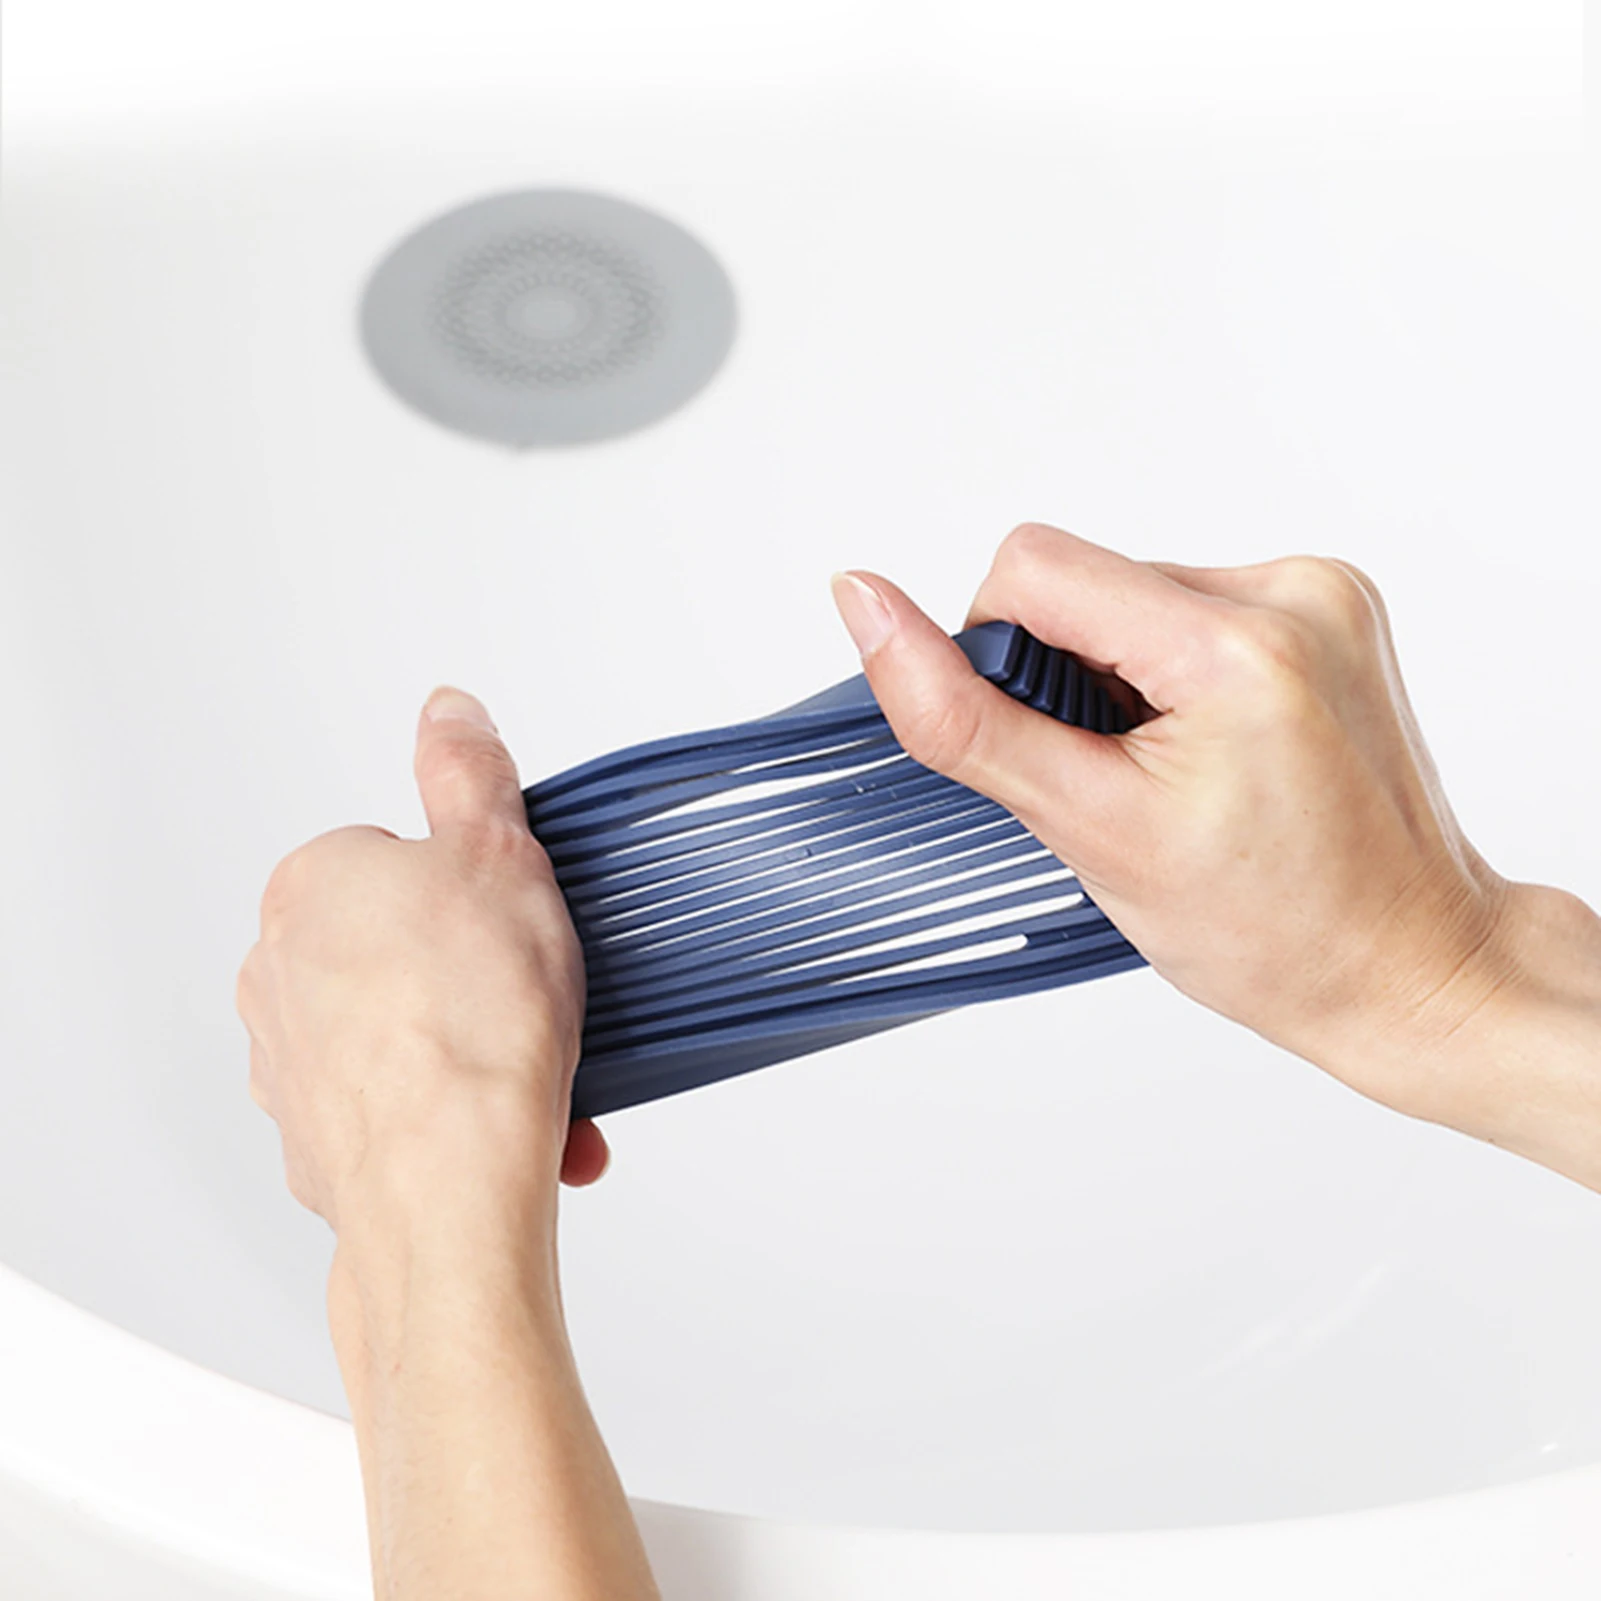 סבון כלים,העצמי ניקוז פרימיום גמישה סיליקון מחזיק סבון, סבון שומר על מקלחת, חדר אמבטיה, מטבח, לשמור סבון יבש - 5